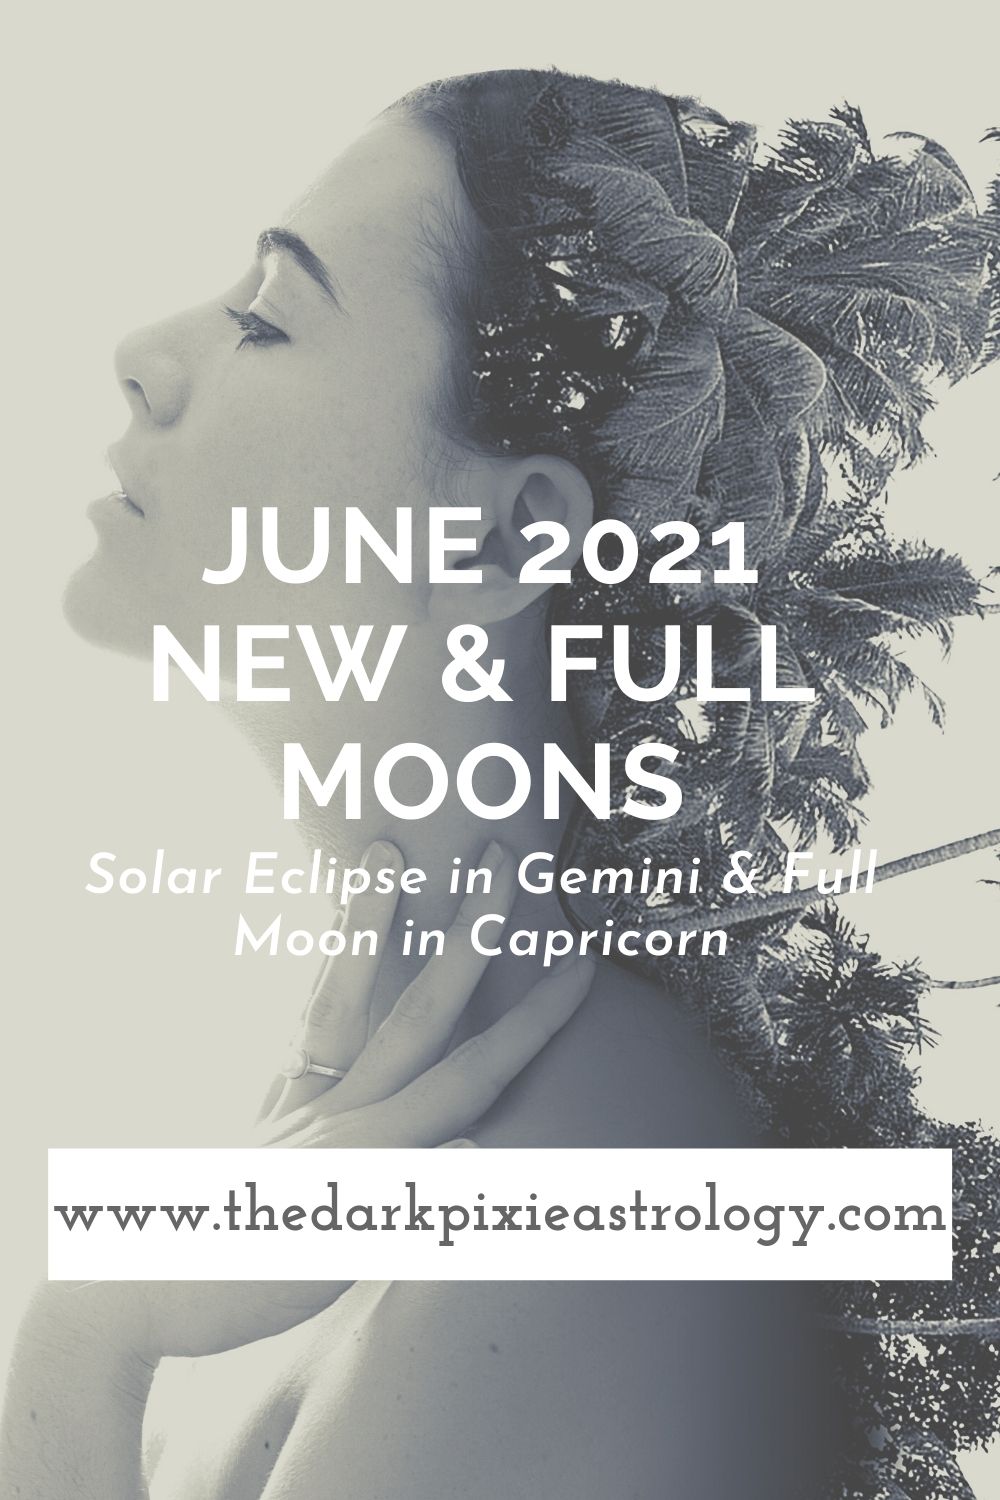 June 2021 New & Full Moons: Solar Eclipse in Gemini & Full Moon in Capricorn - The Dark Pixie Astrology